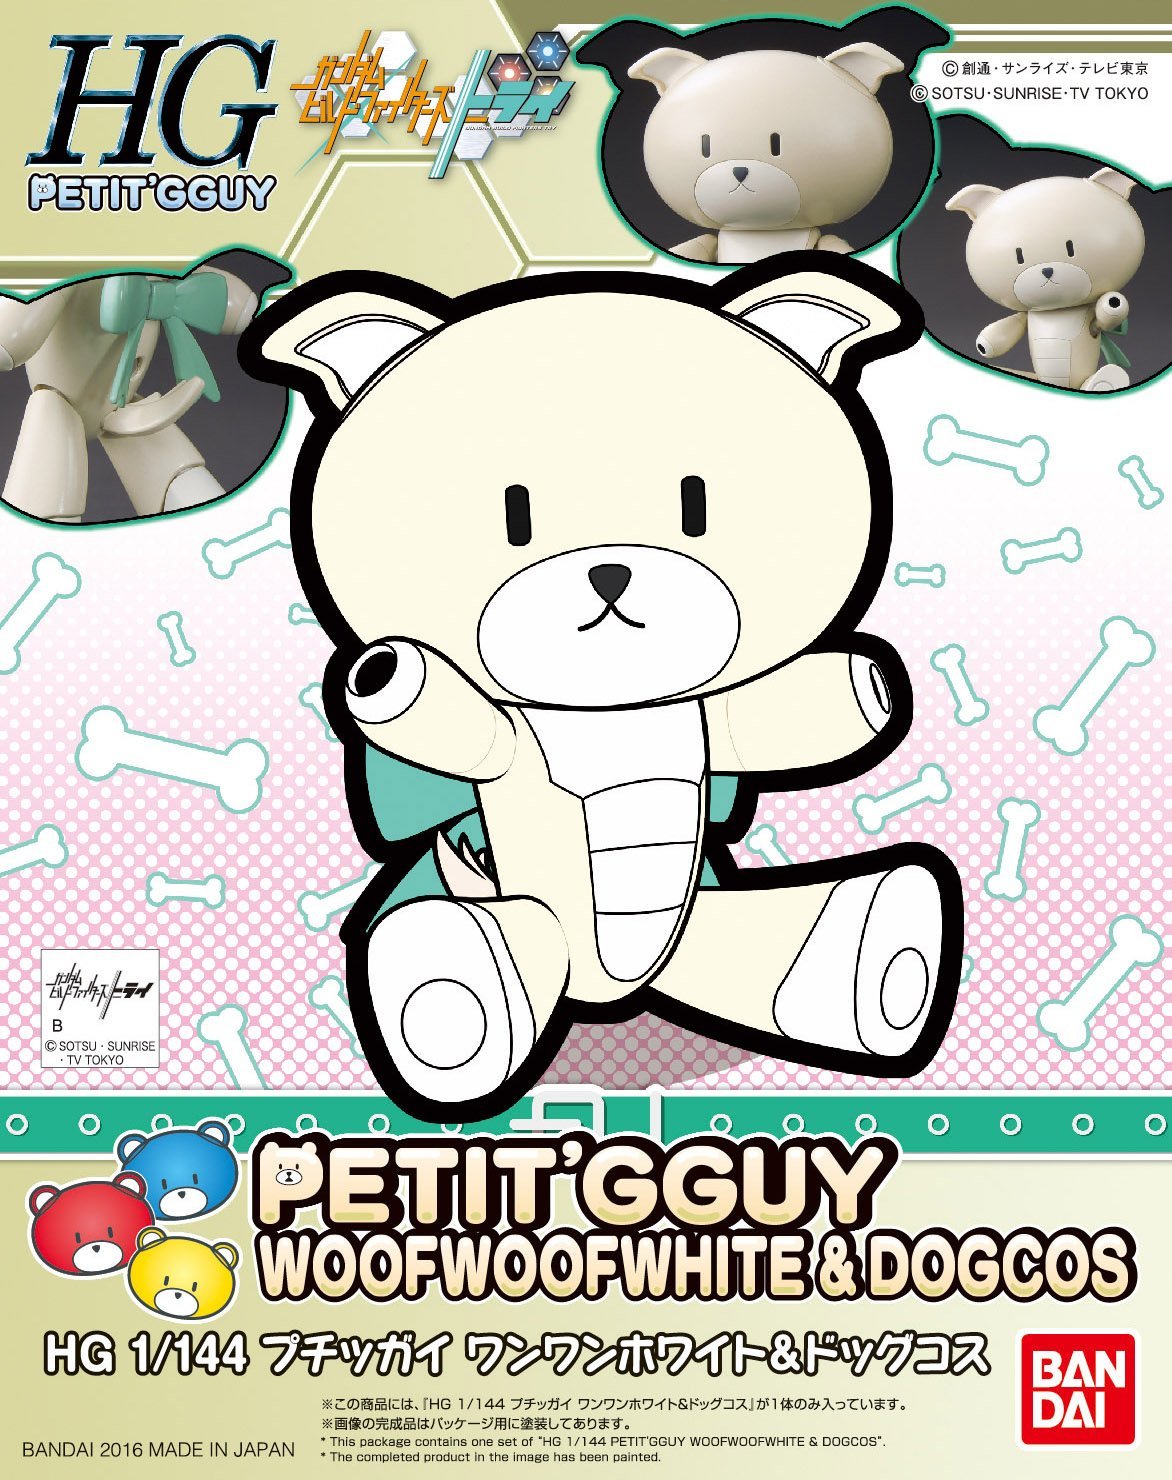 Gundam HGPG Petit'Gguy #11 Beargguy Petit'Gguy Woofwoofwhite & Dog Cosplay Bear Guy Model Kit